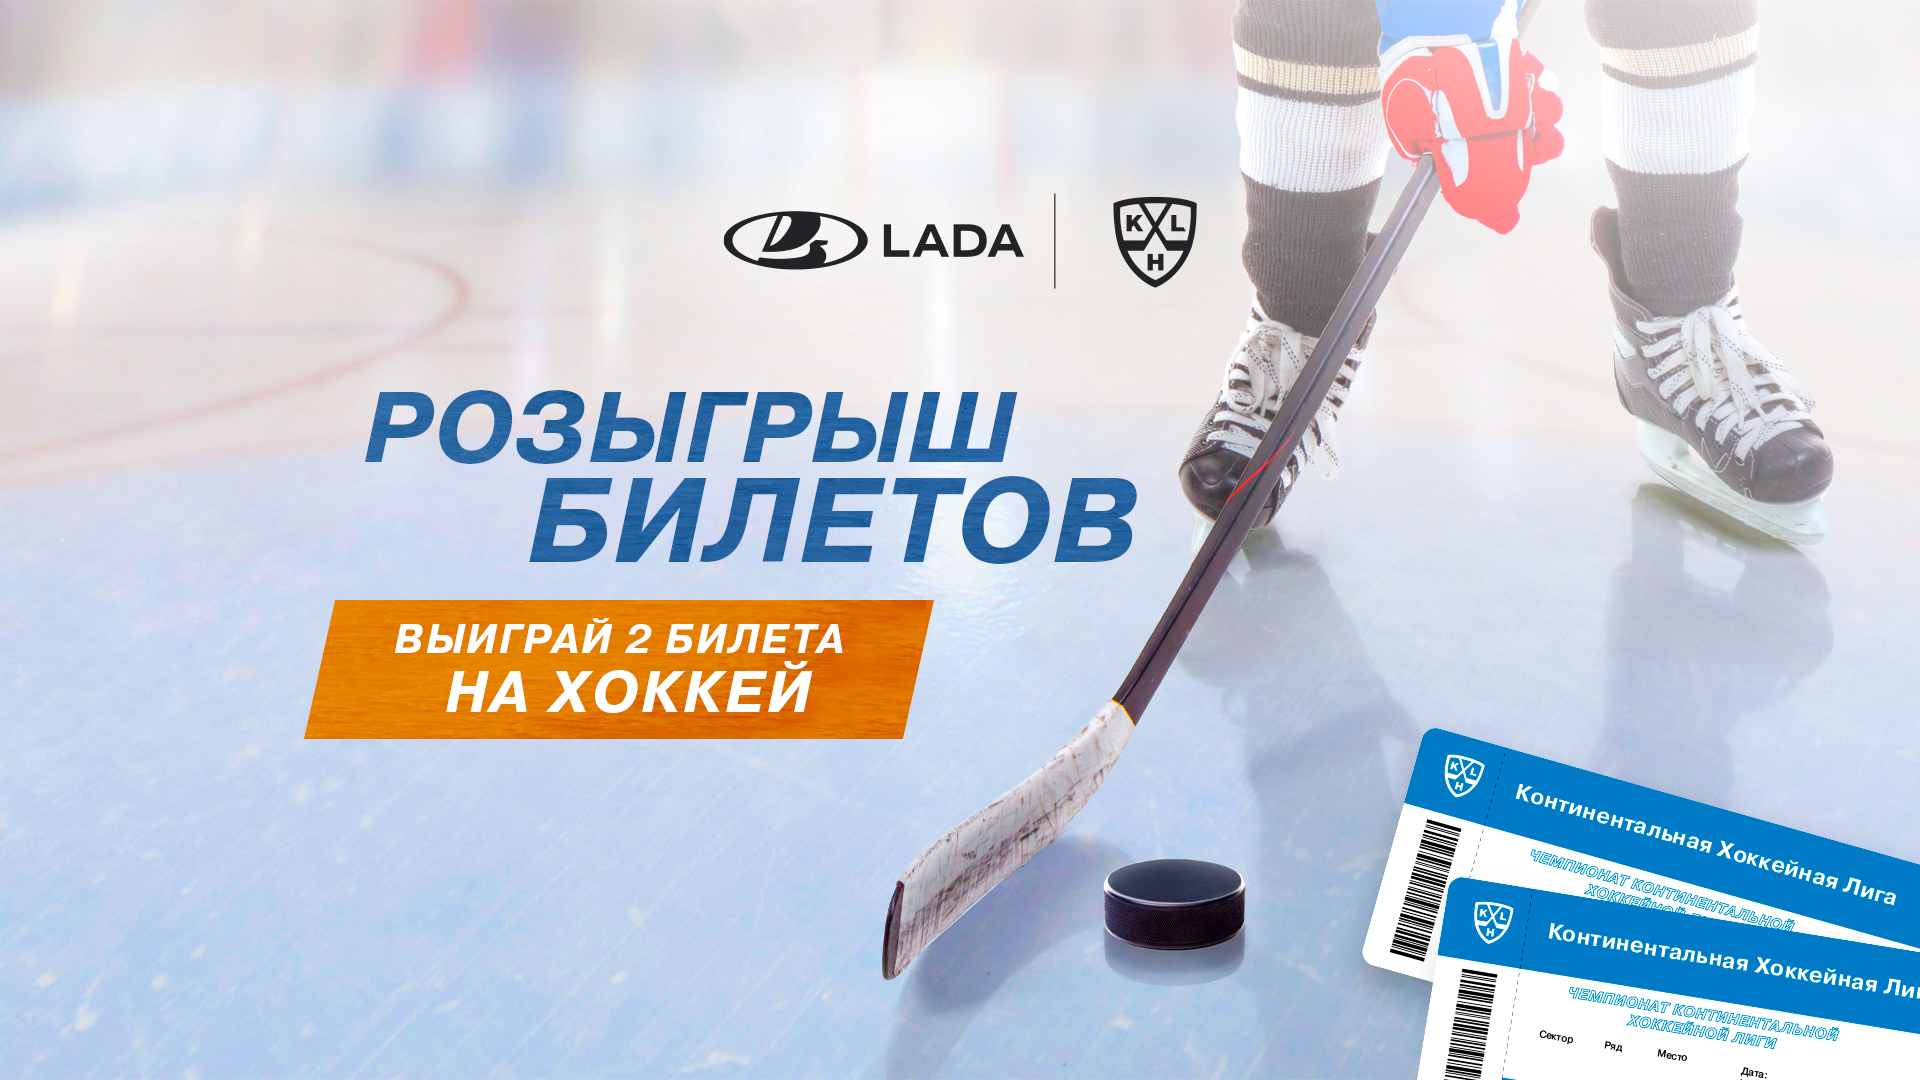 LADA-KHL